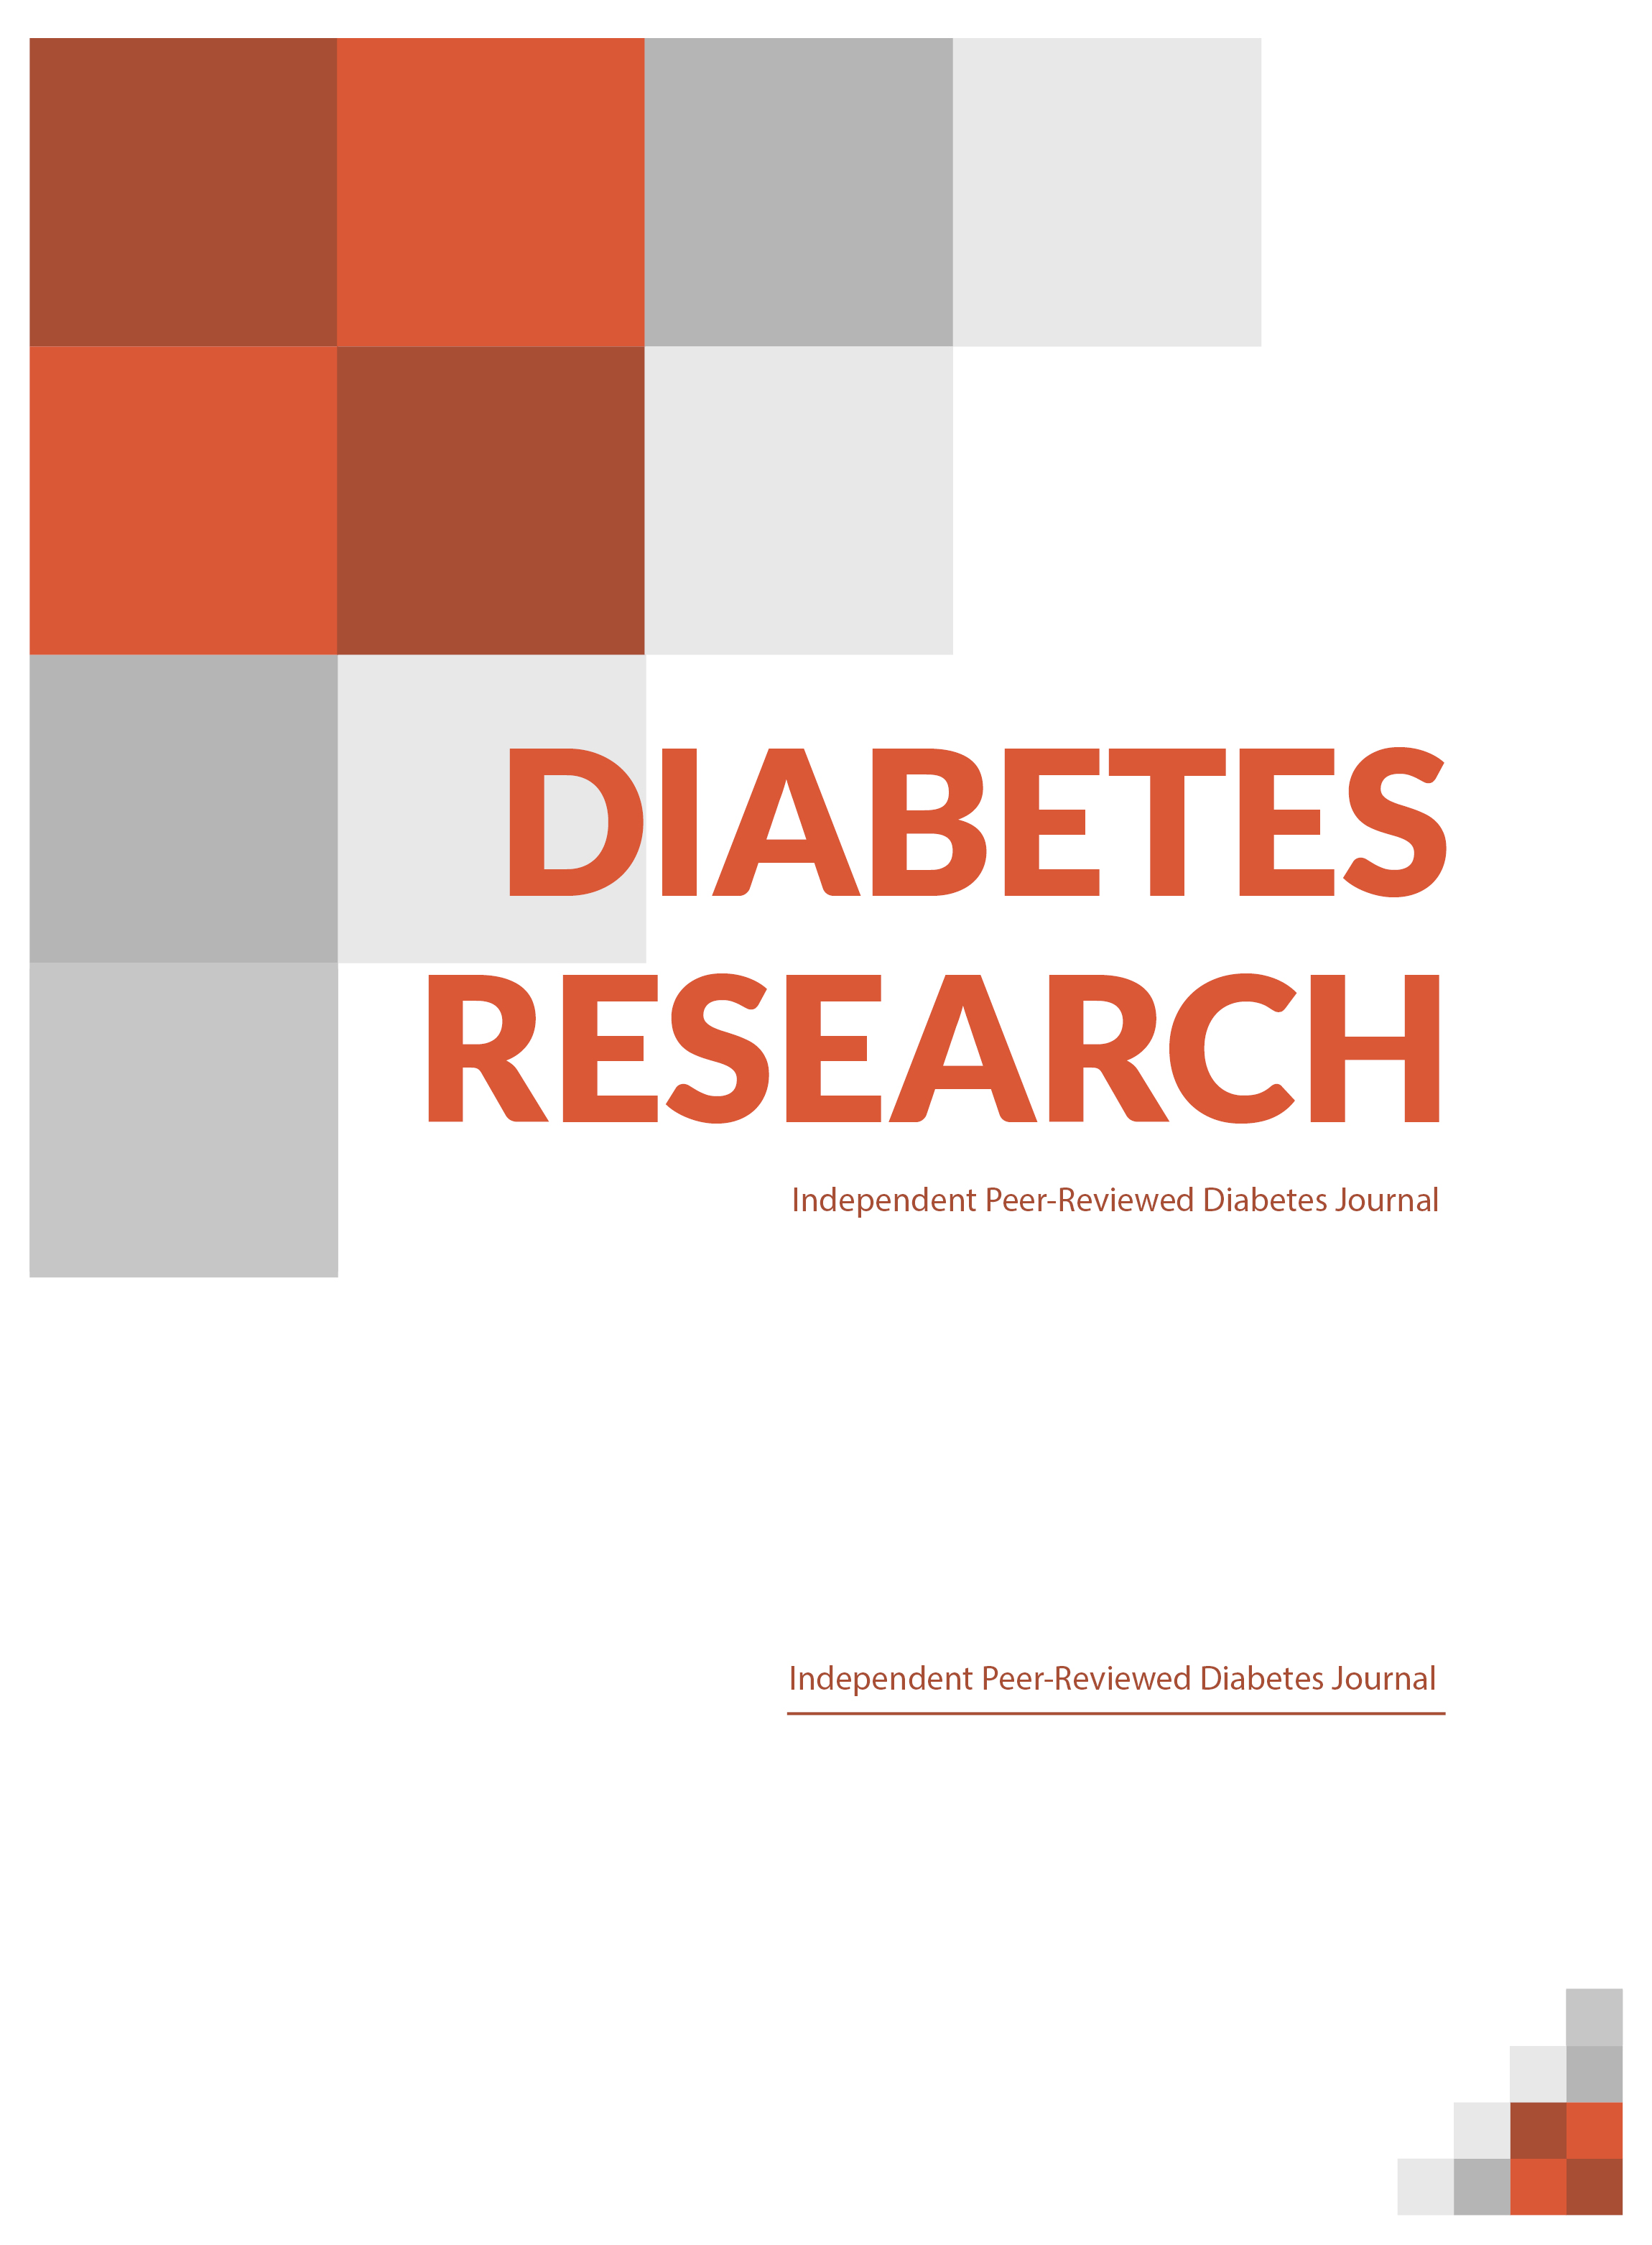 phd diabetes research